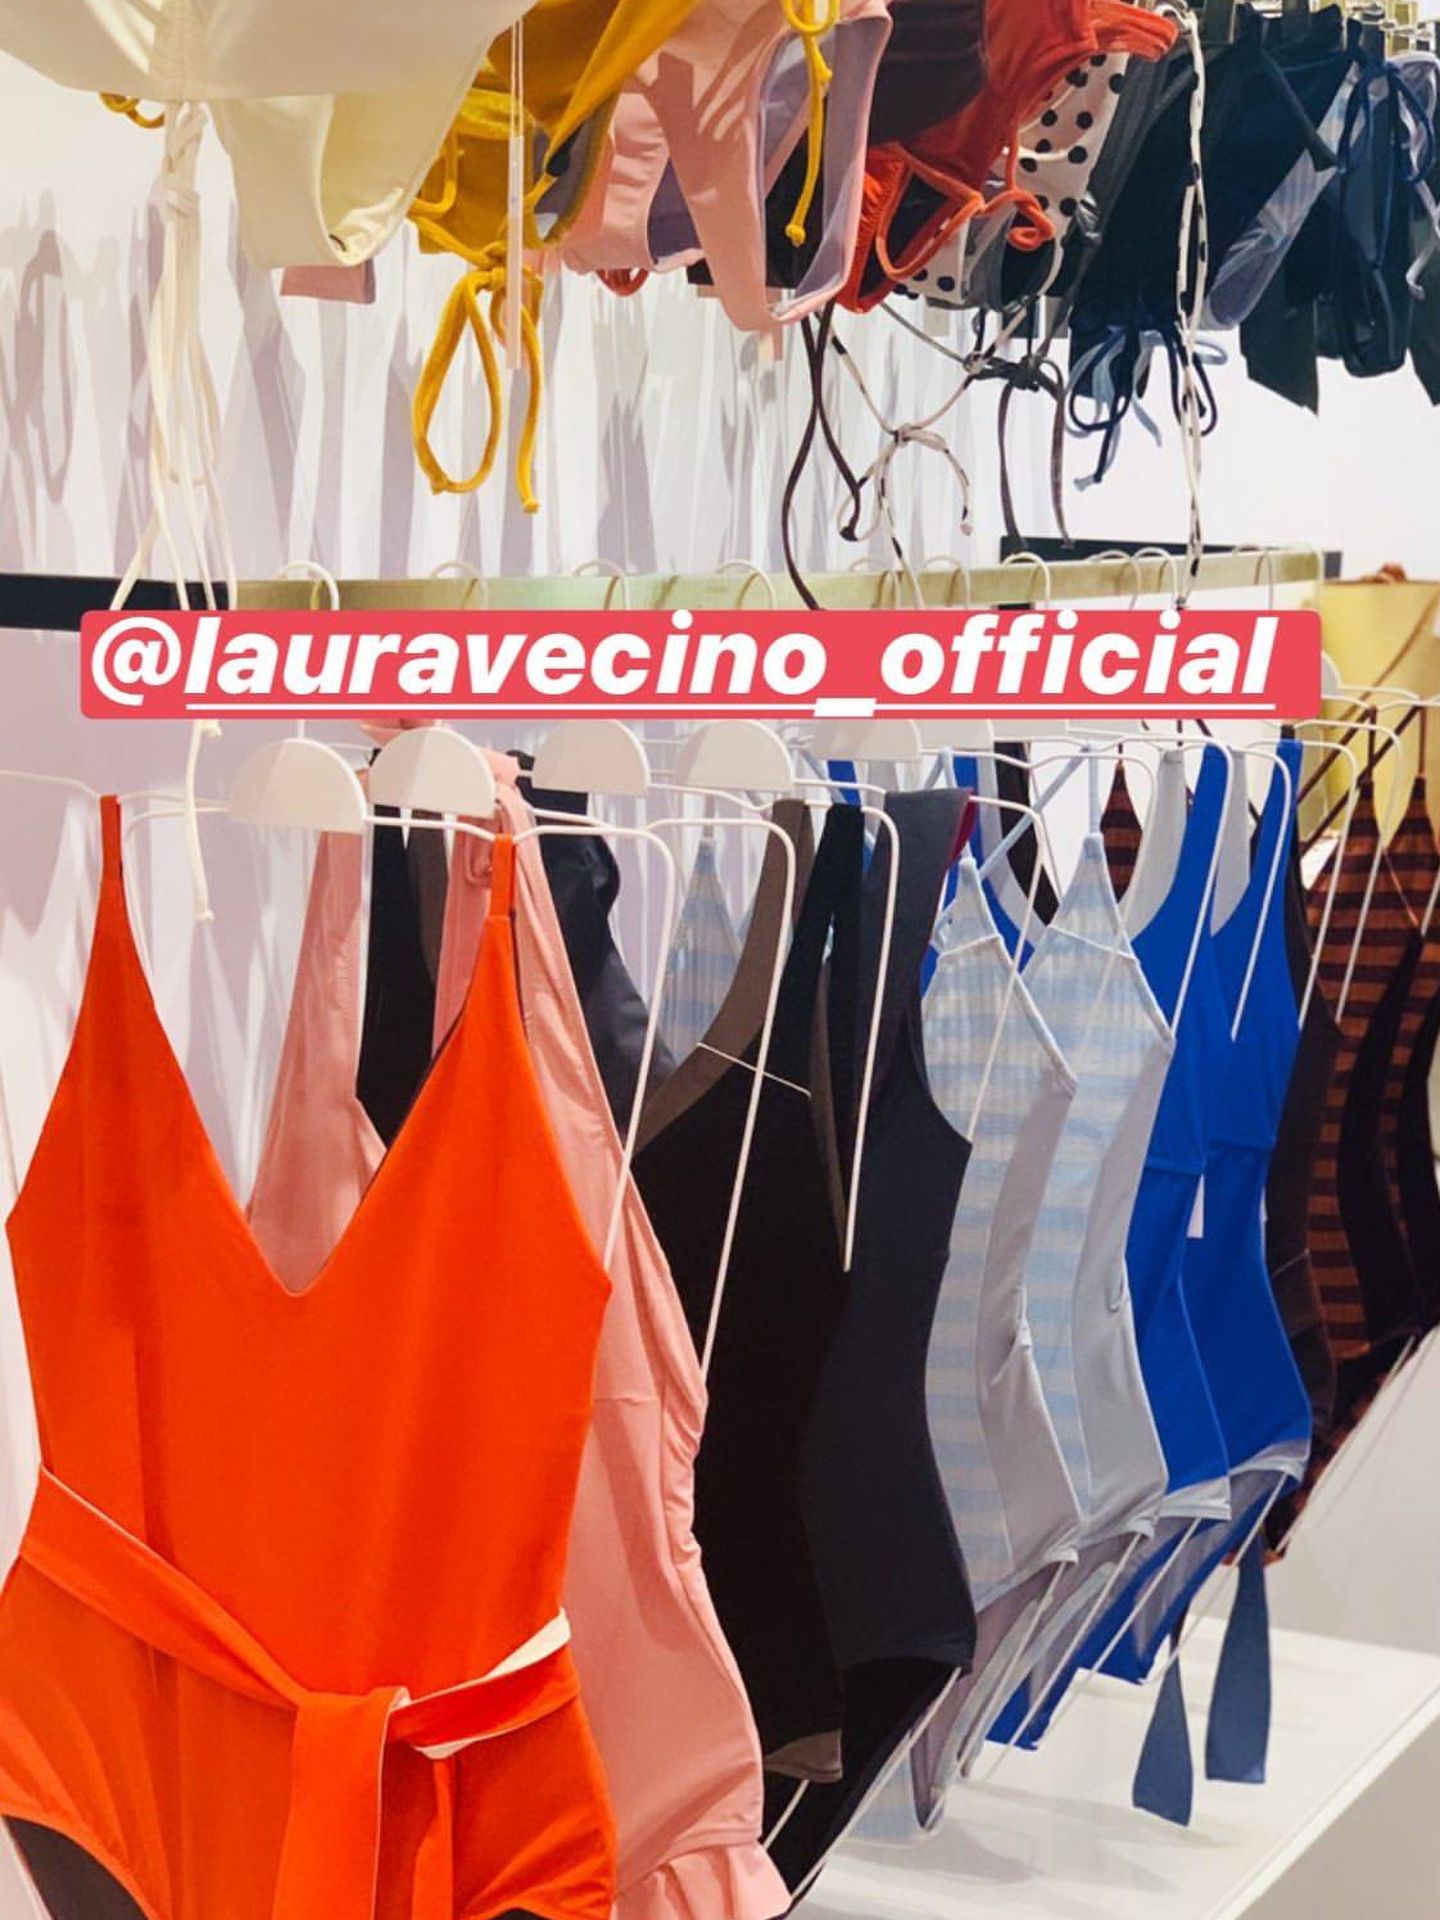 Detalle de la tienda de Laura Vecino. (@andreapascual)